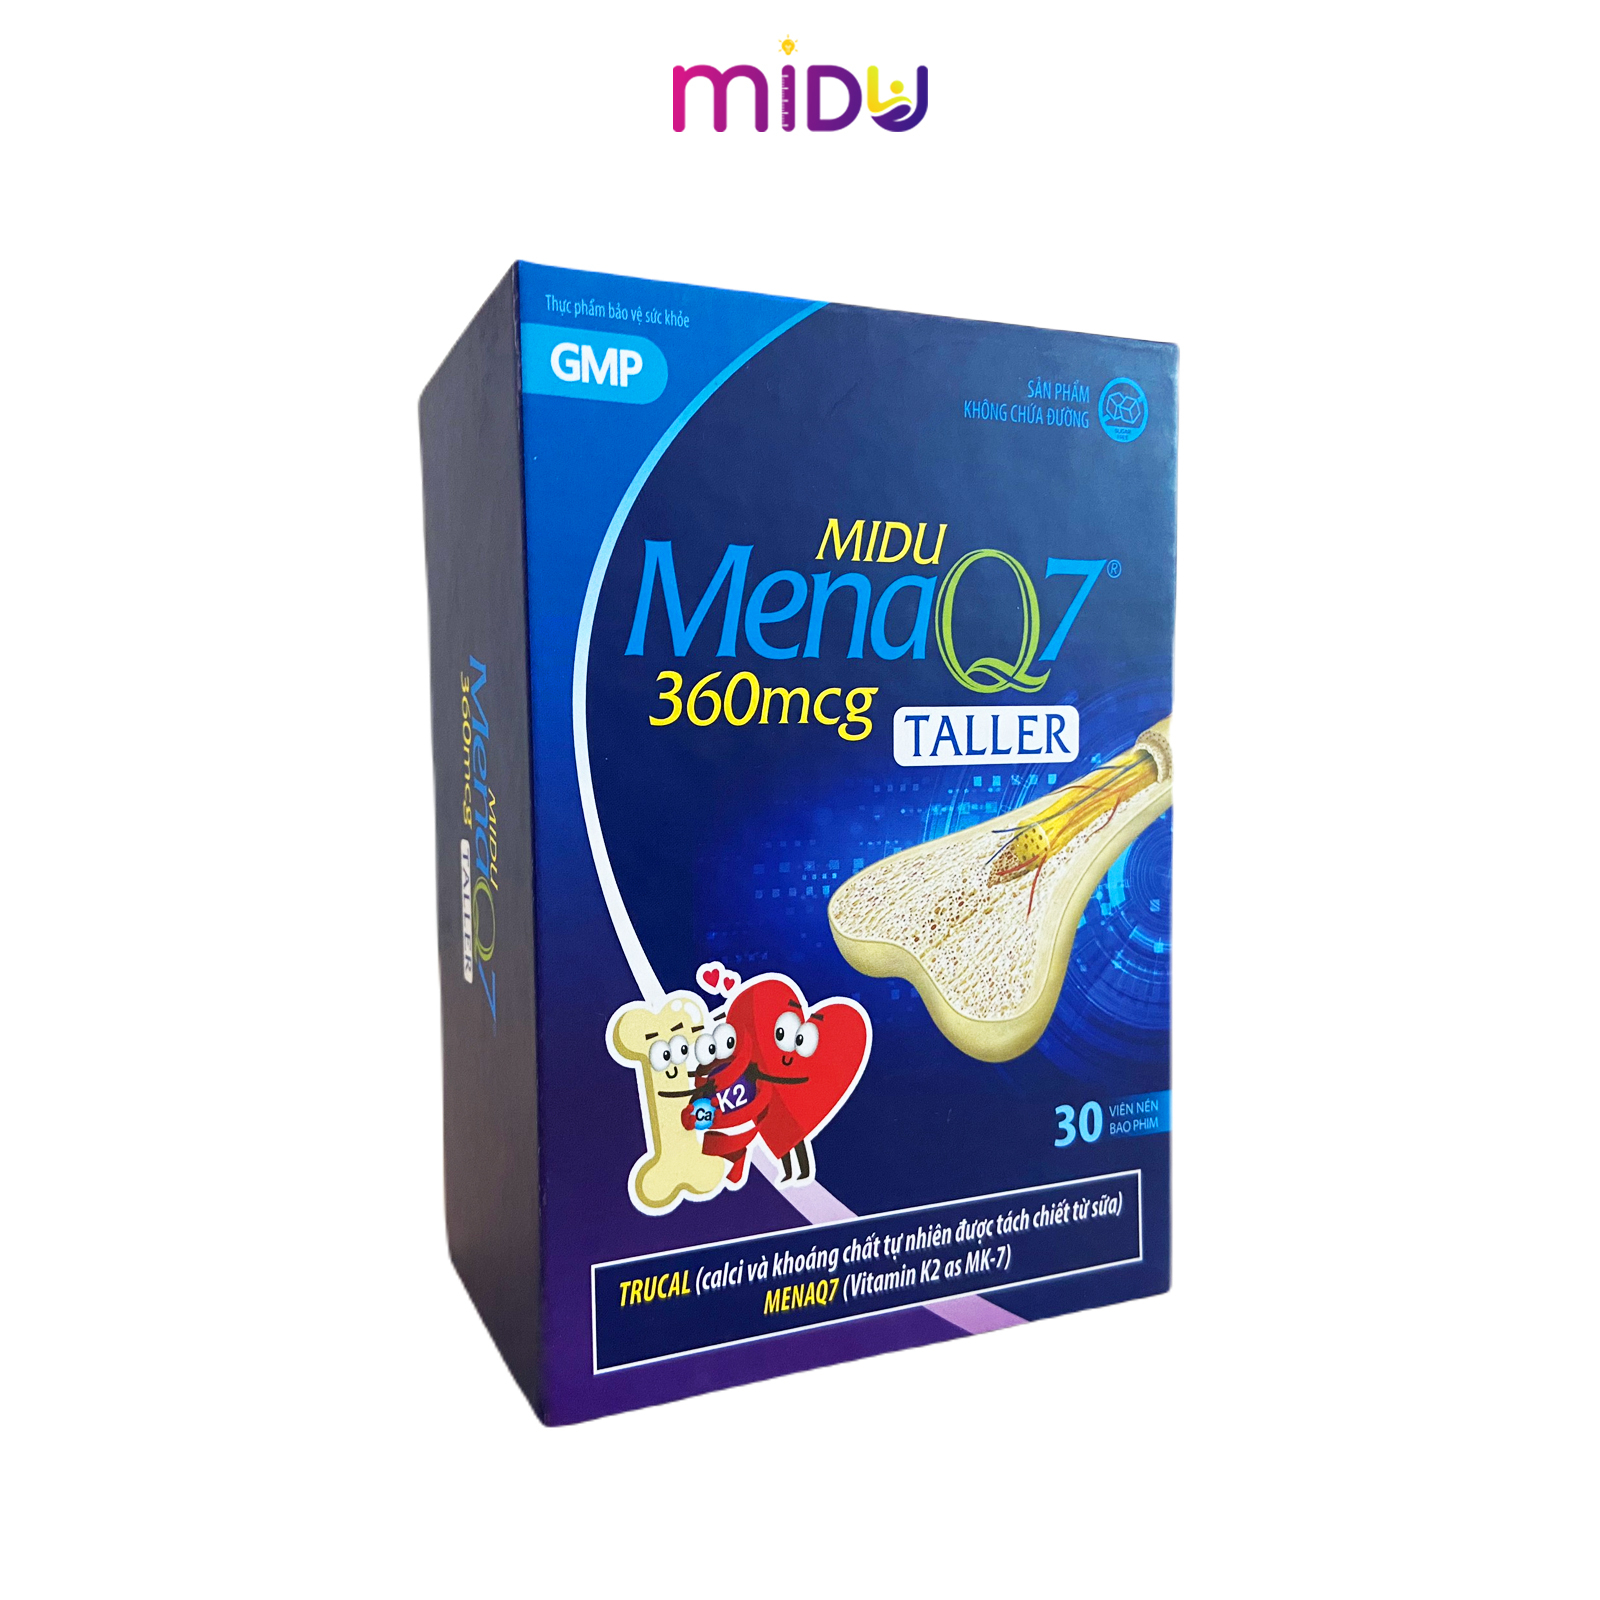 Midu MenaQ7 360mcg hỗ trợ chắc khỏe xương và phát triển chiều cao cho trẻ.